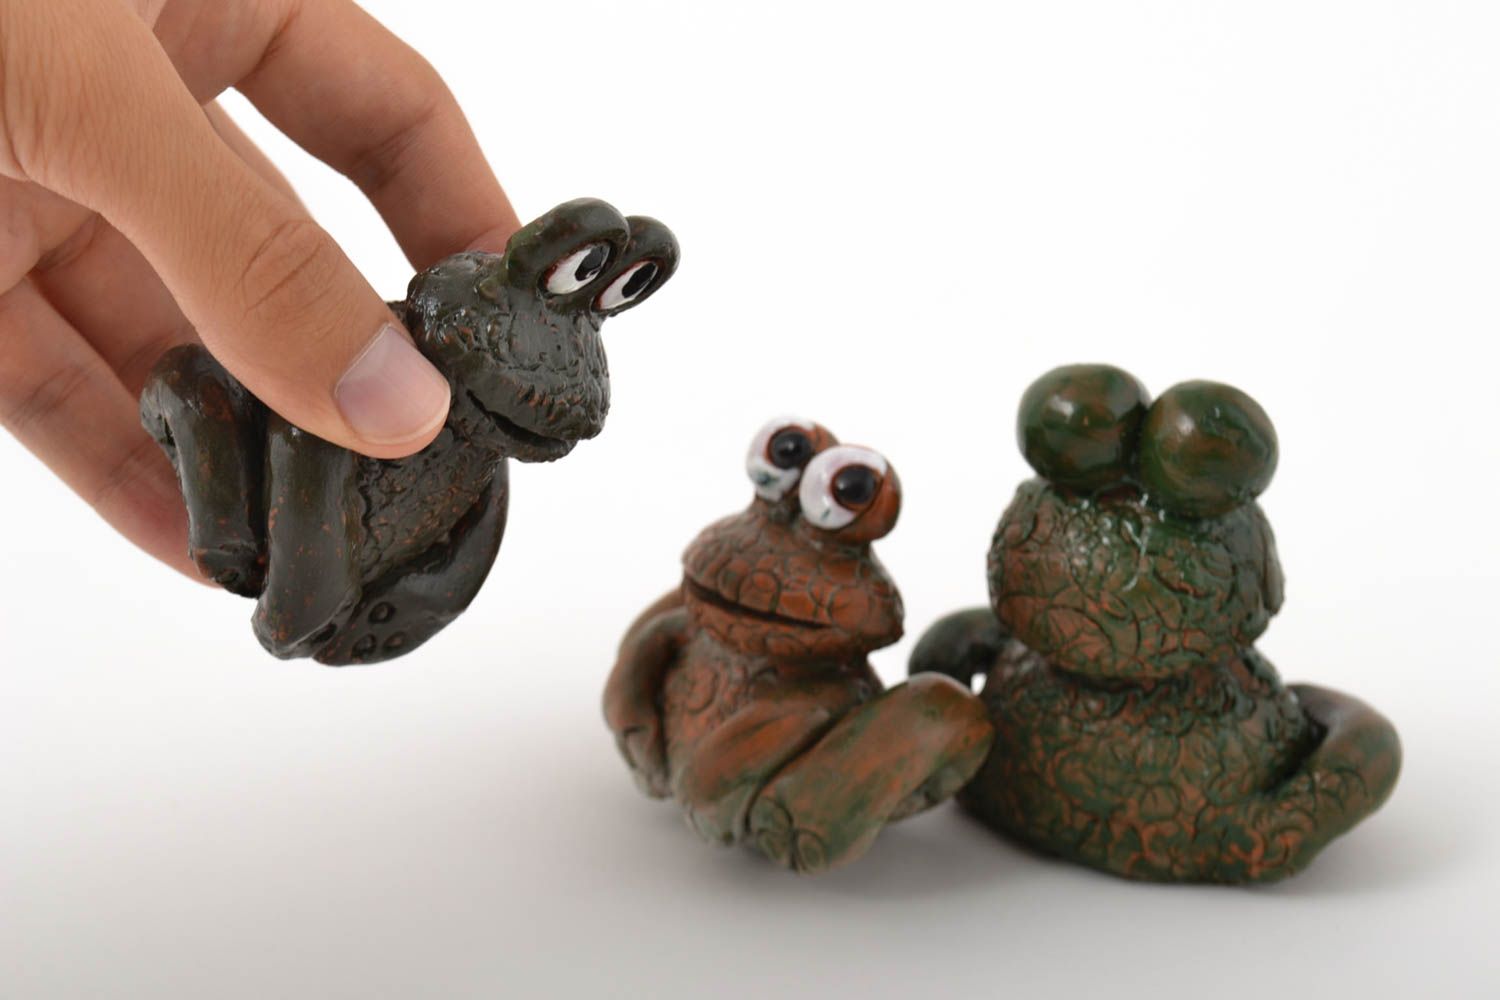 Игрушки из глины фигурки животных хэнд мейд коллекционные фигурки набор 3 штуки фото 5